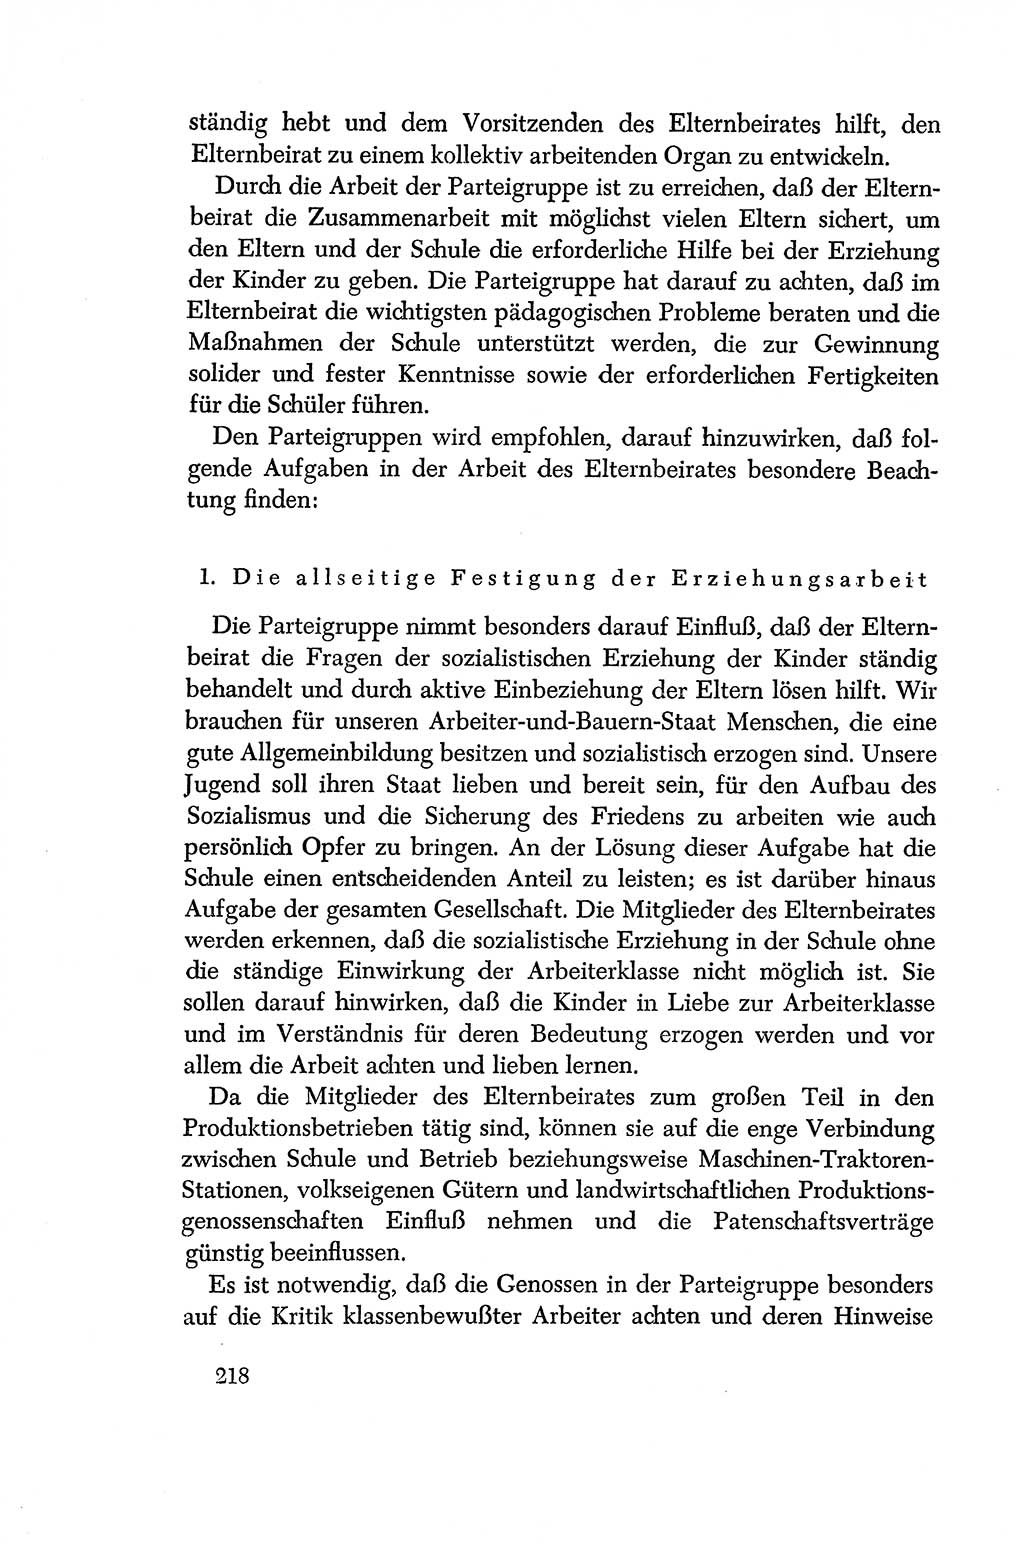 Dokumente der Sozialistischen Einheitspartei Deutschlands (SED) [Deutsche Demokratische Republik (DDR)] 1956-1957, Seite 218 (Dok. SED DDR 1956-1957, S. 218)